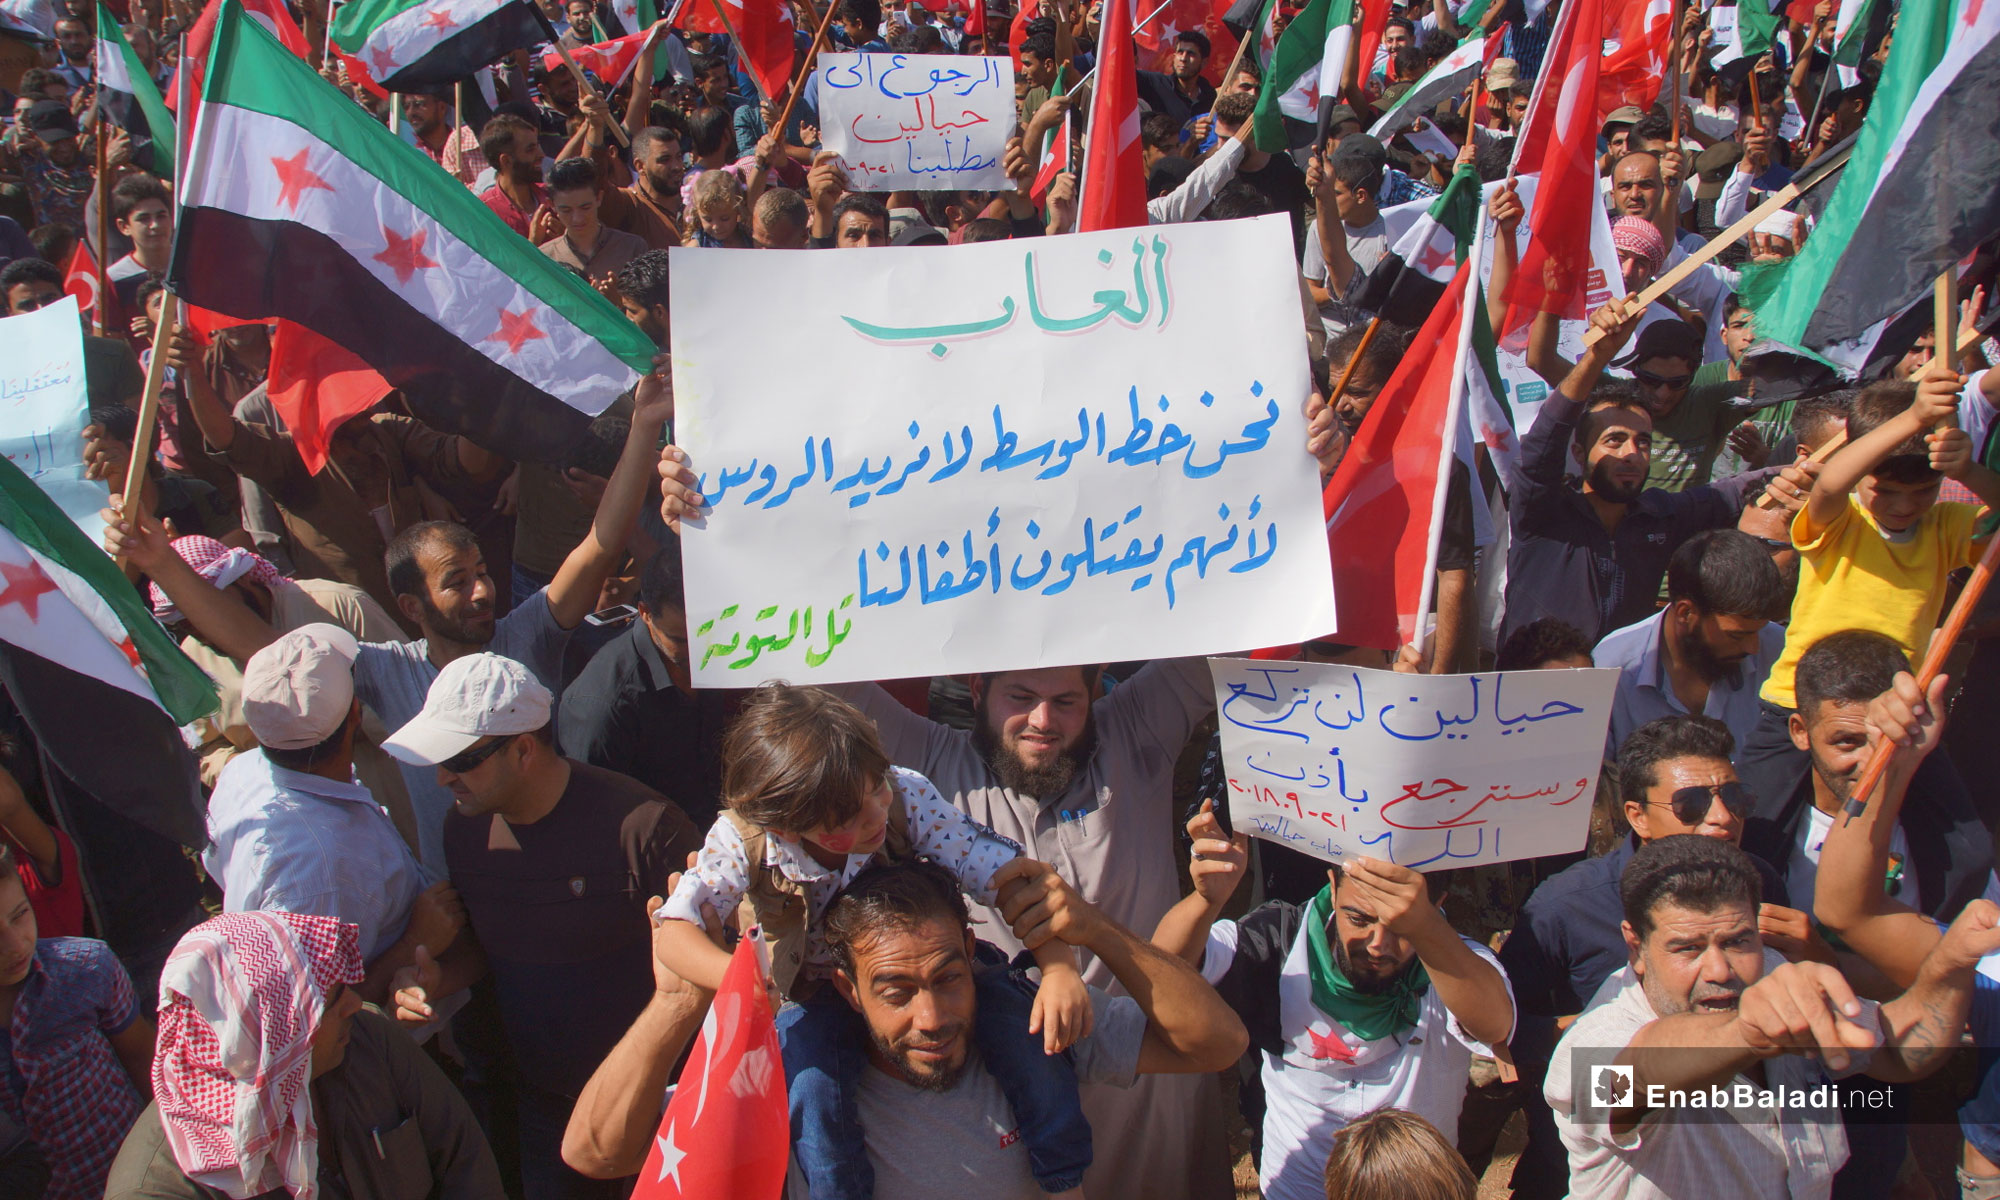 مظاهرات تطالب بتجديد الثورة والإفراج عن المعتقلين في ريف حماة - 21 من أيلول 2018 (عنب بلدي)